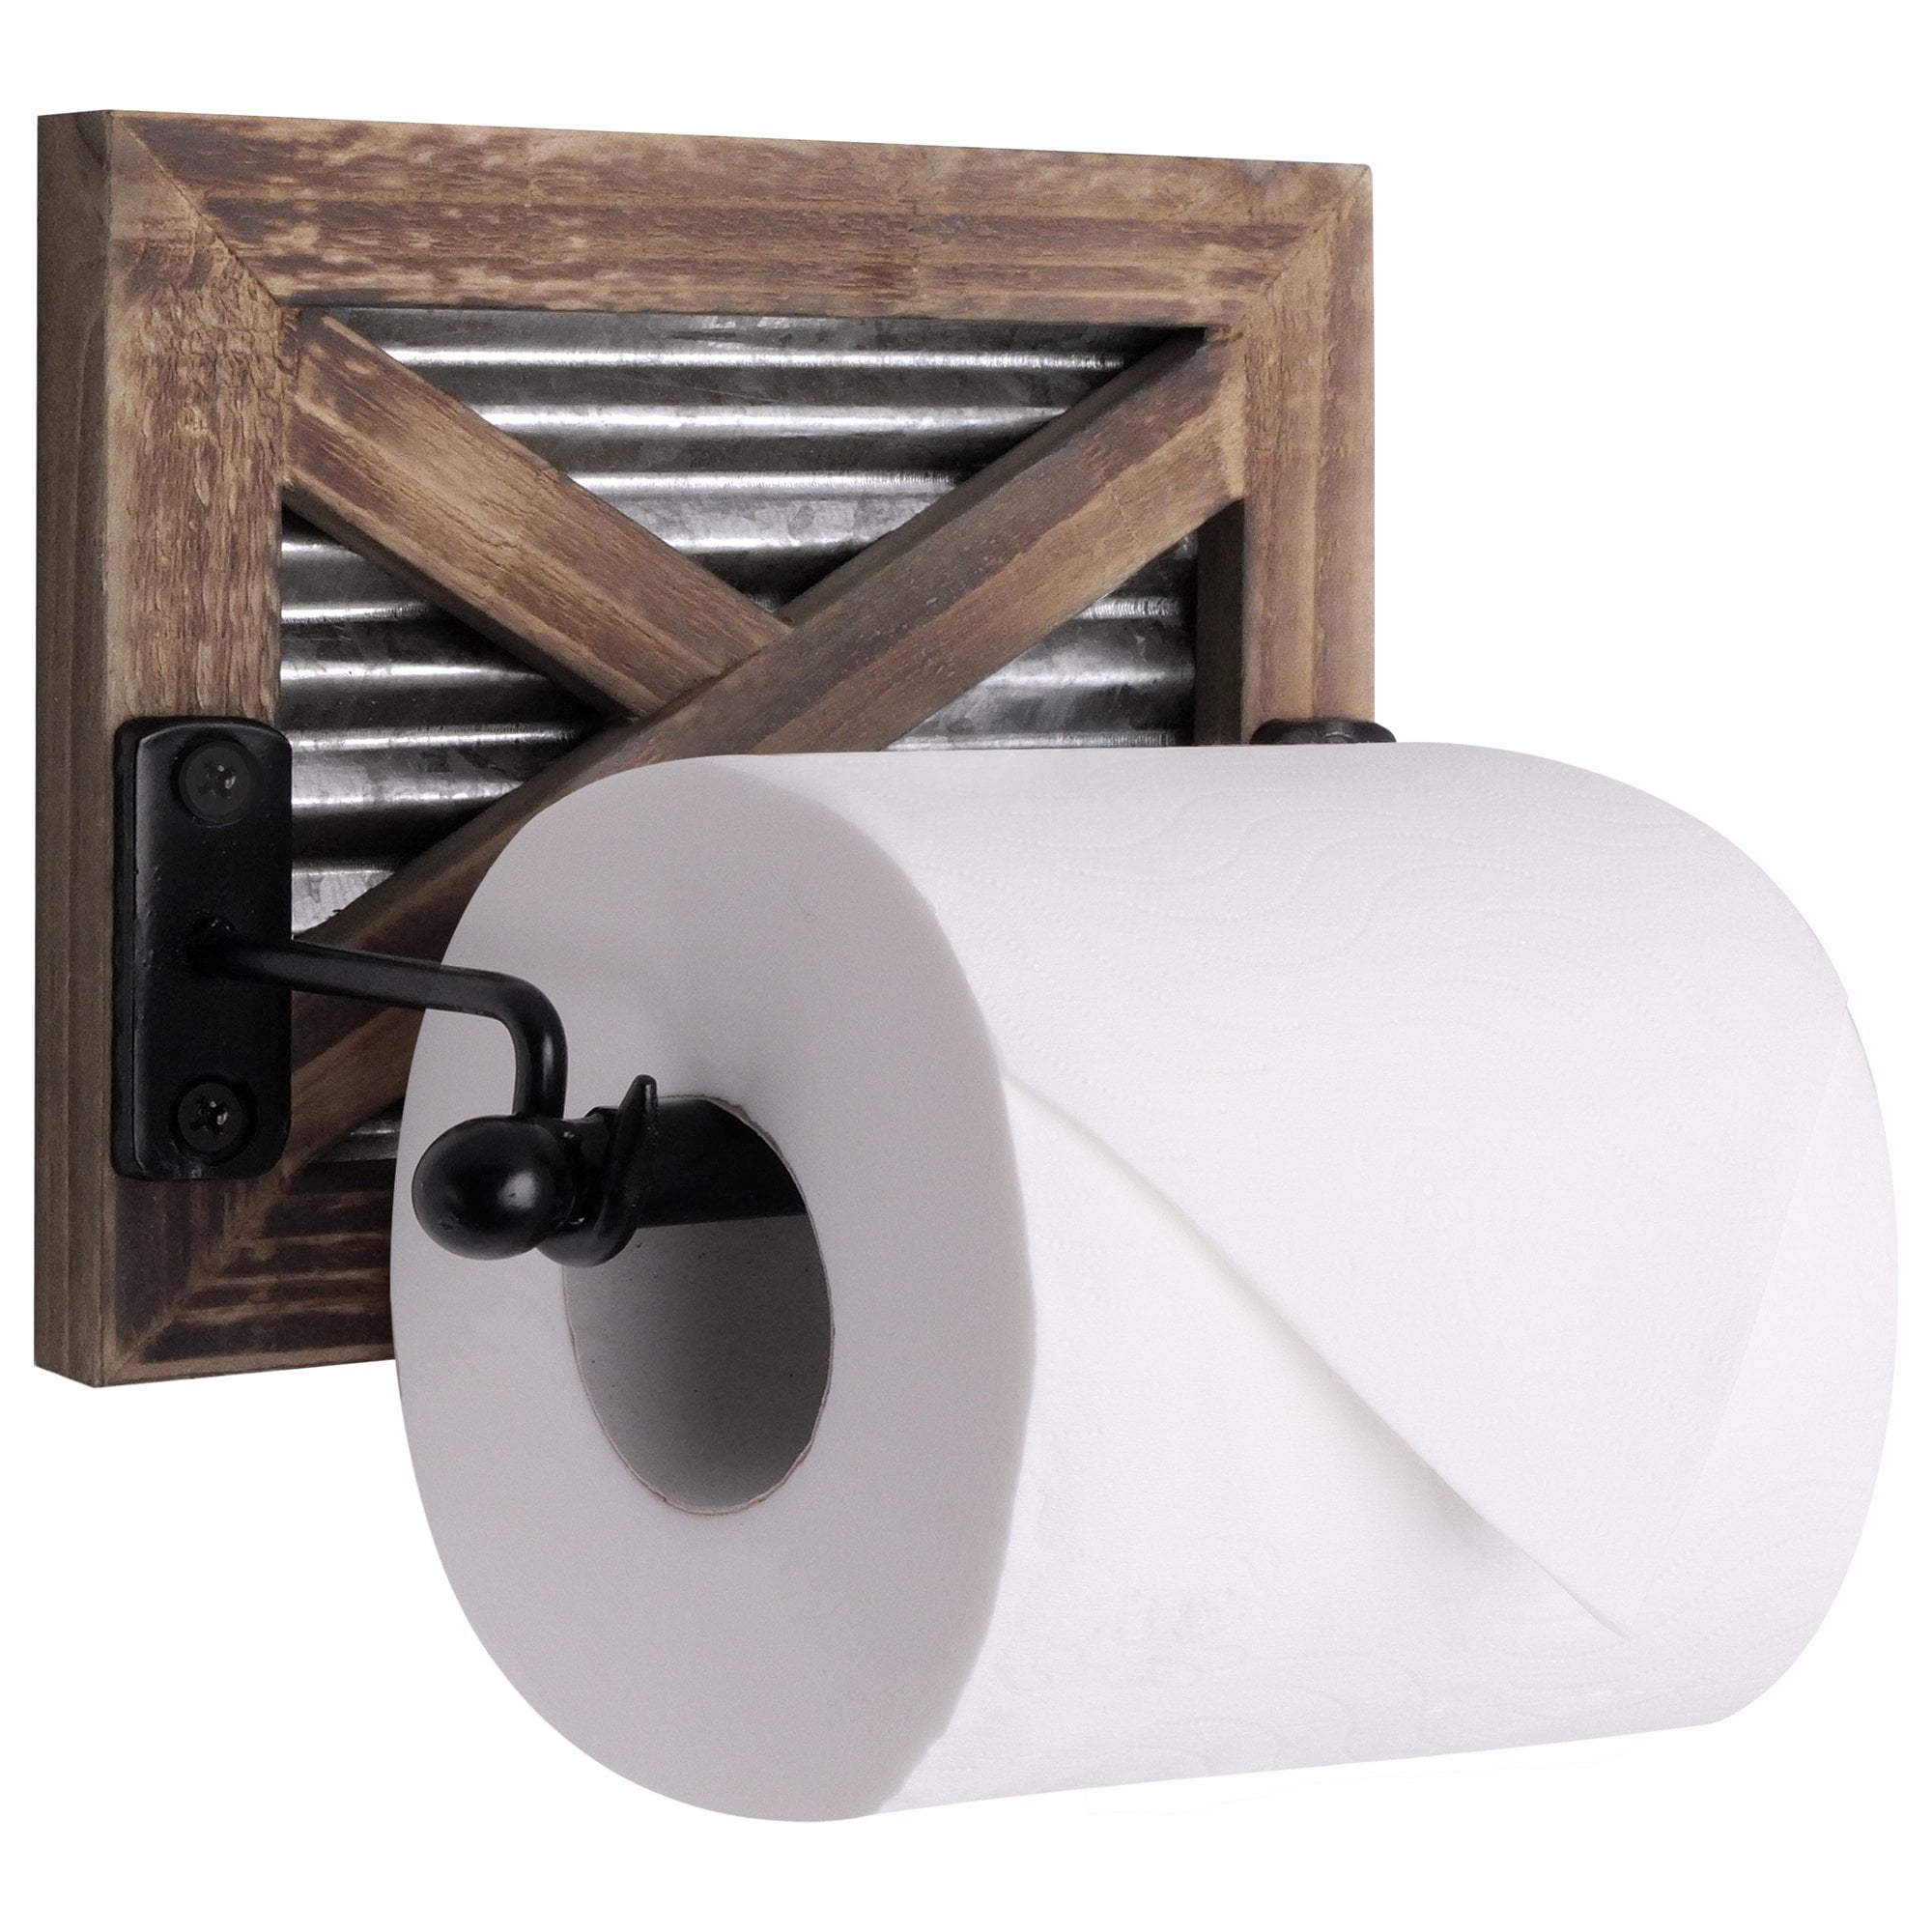 X Style Barn Door Toilet Paper Holder